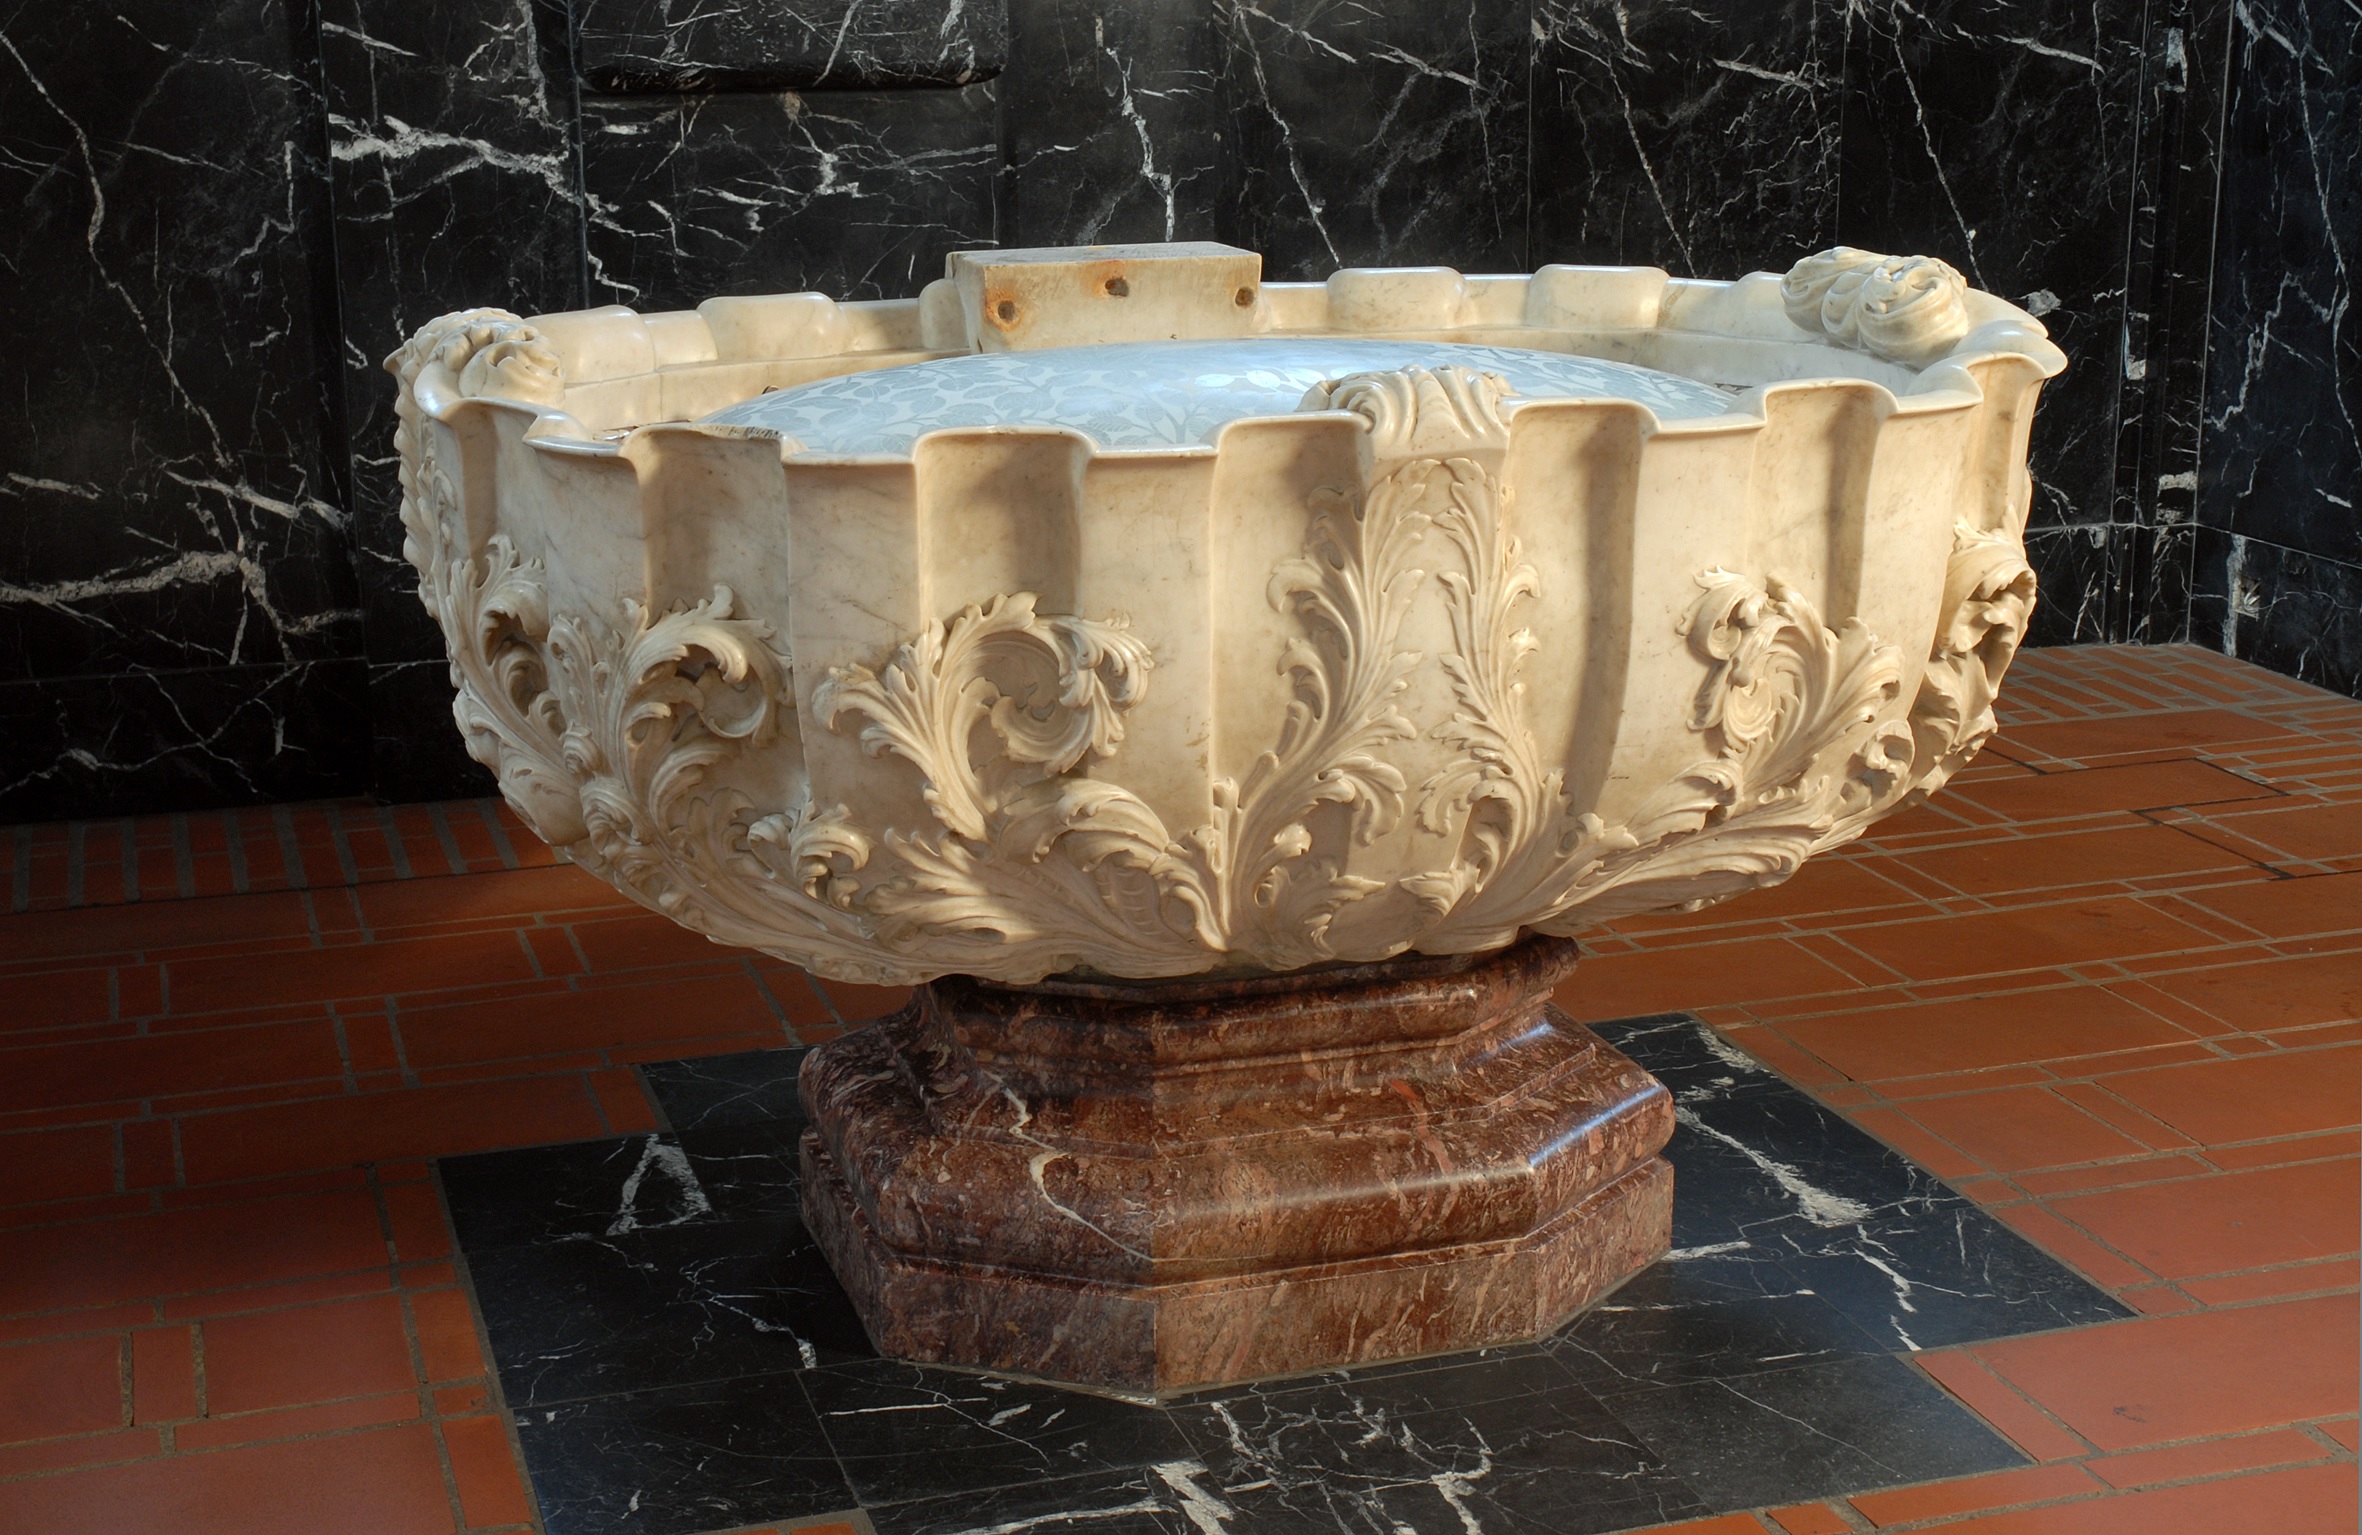 Hier ist das Taufbecken des Trierer Doms zusehen. Er ist schlicht gehalten und aus hellem Stein gefertigt